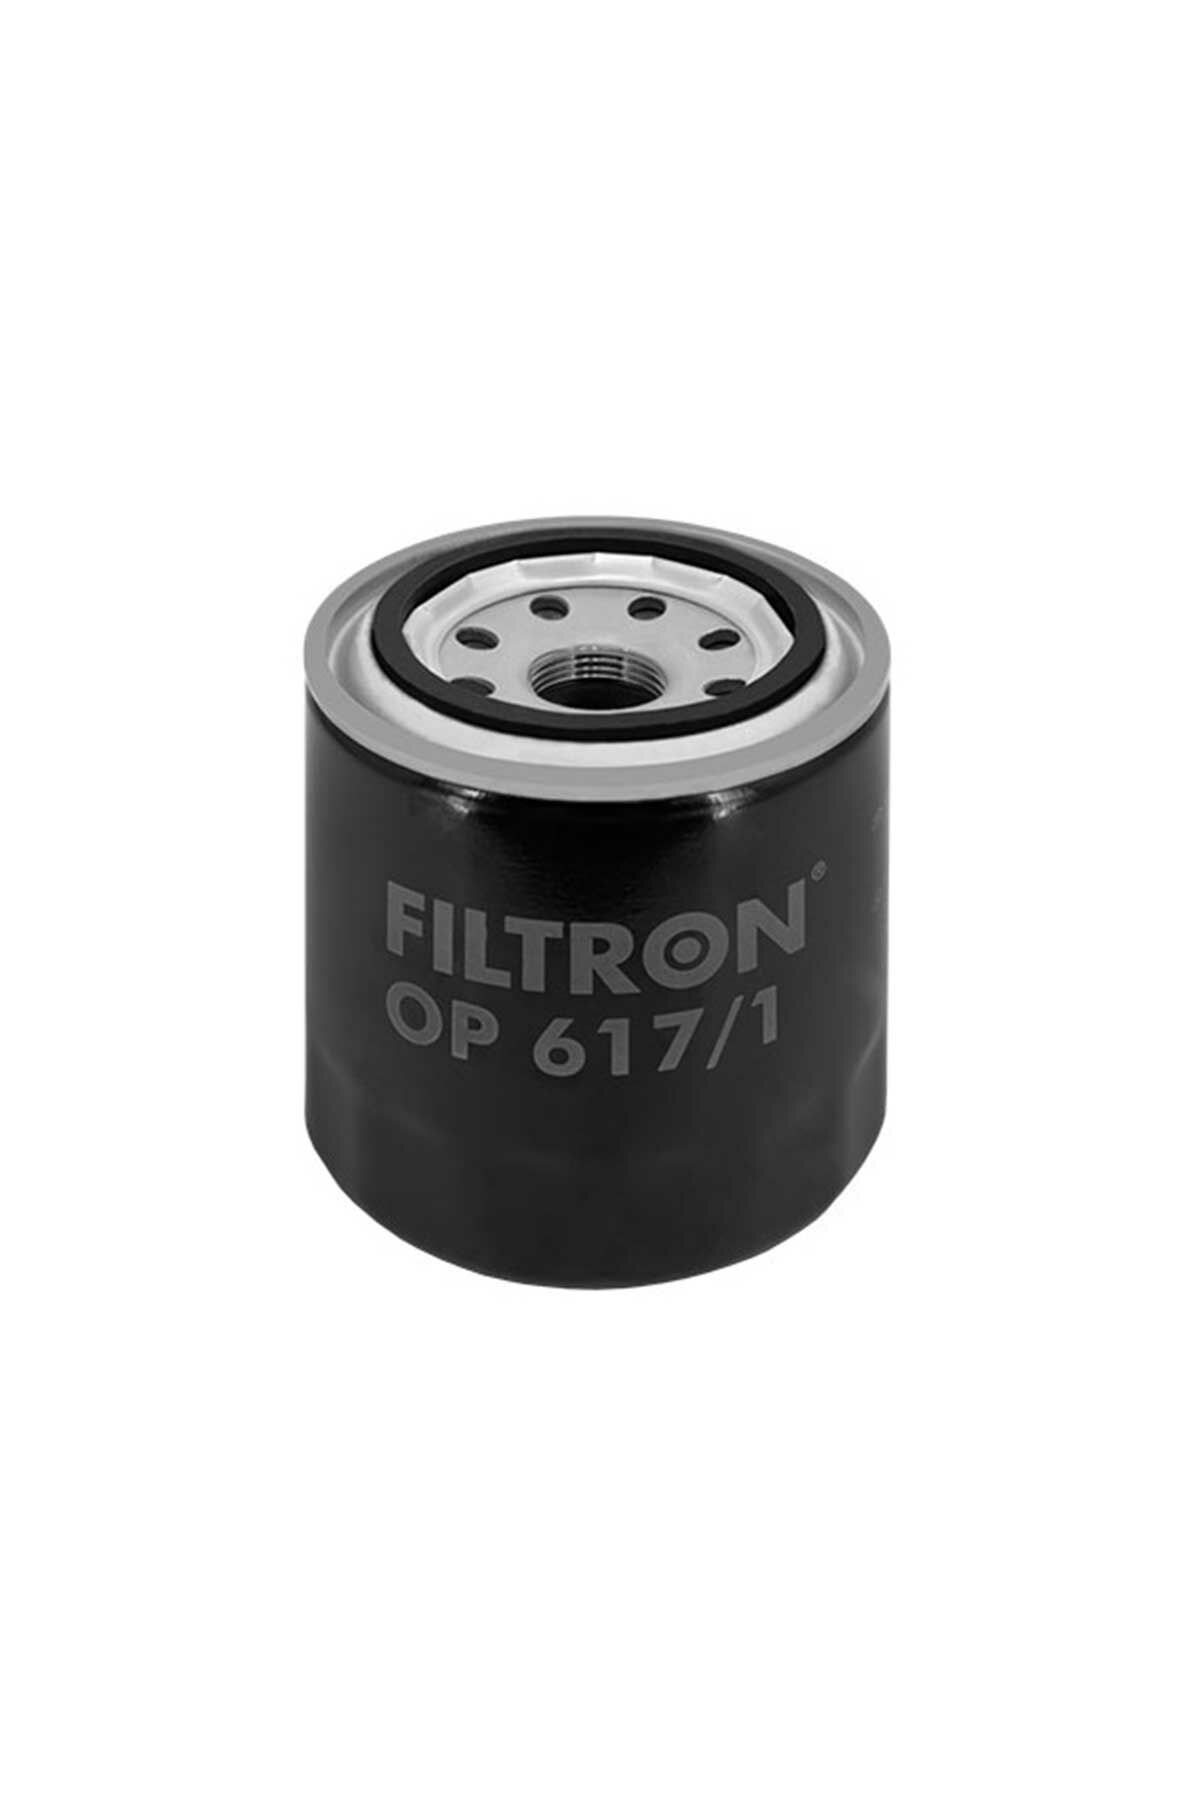 Hyundai Tucson 1.6 GDI Benzinli Yağ Filtresi 2015-2018 Filtron OP617/1